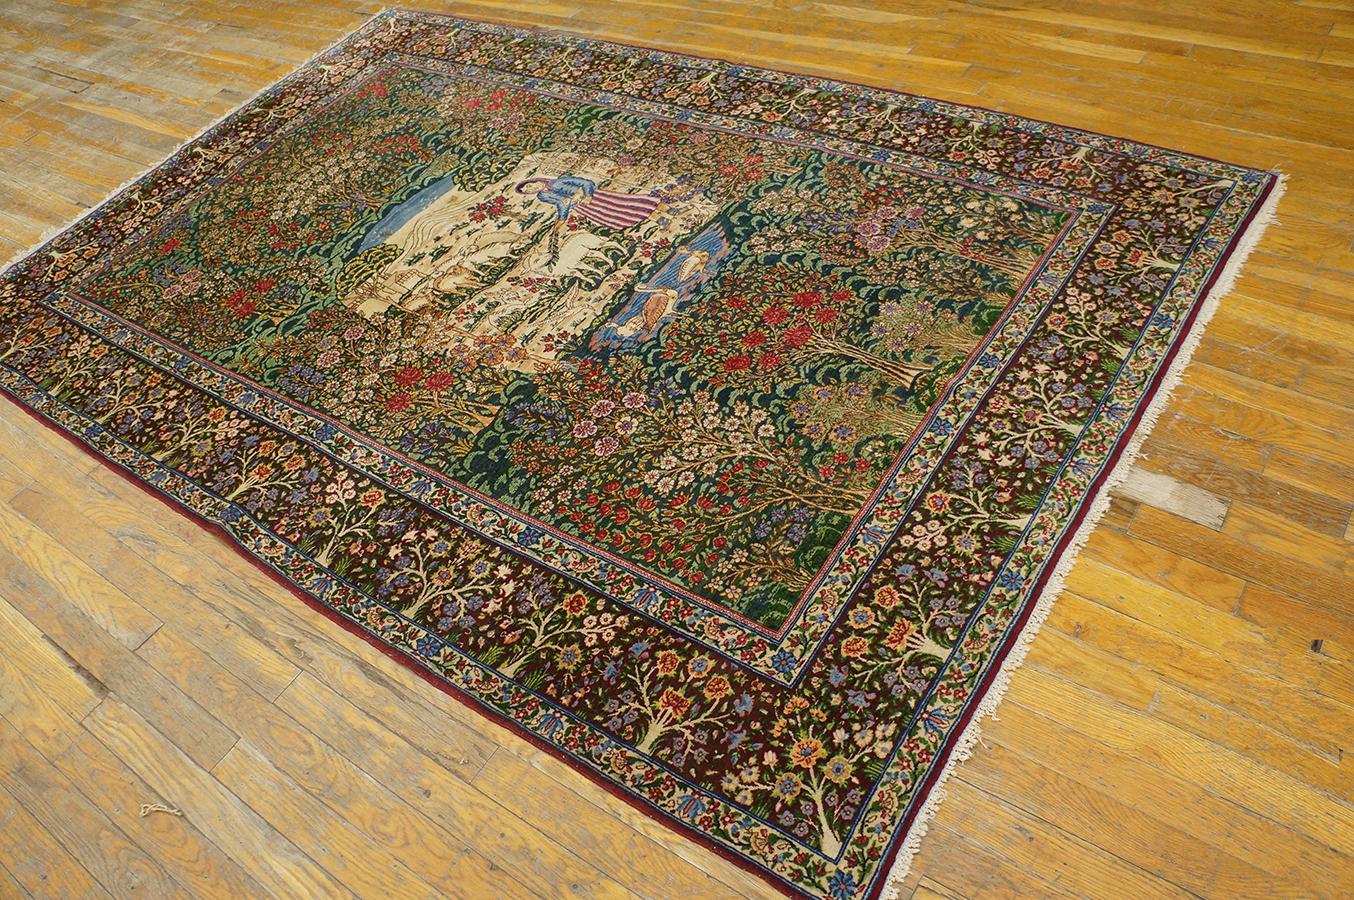 Early 20th Century Persian Kirman Carpet
4'10